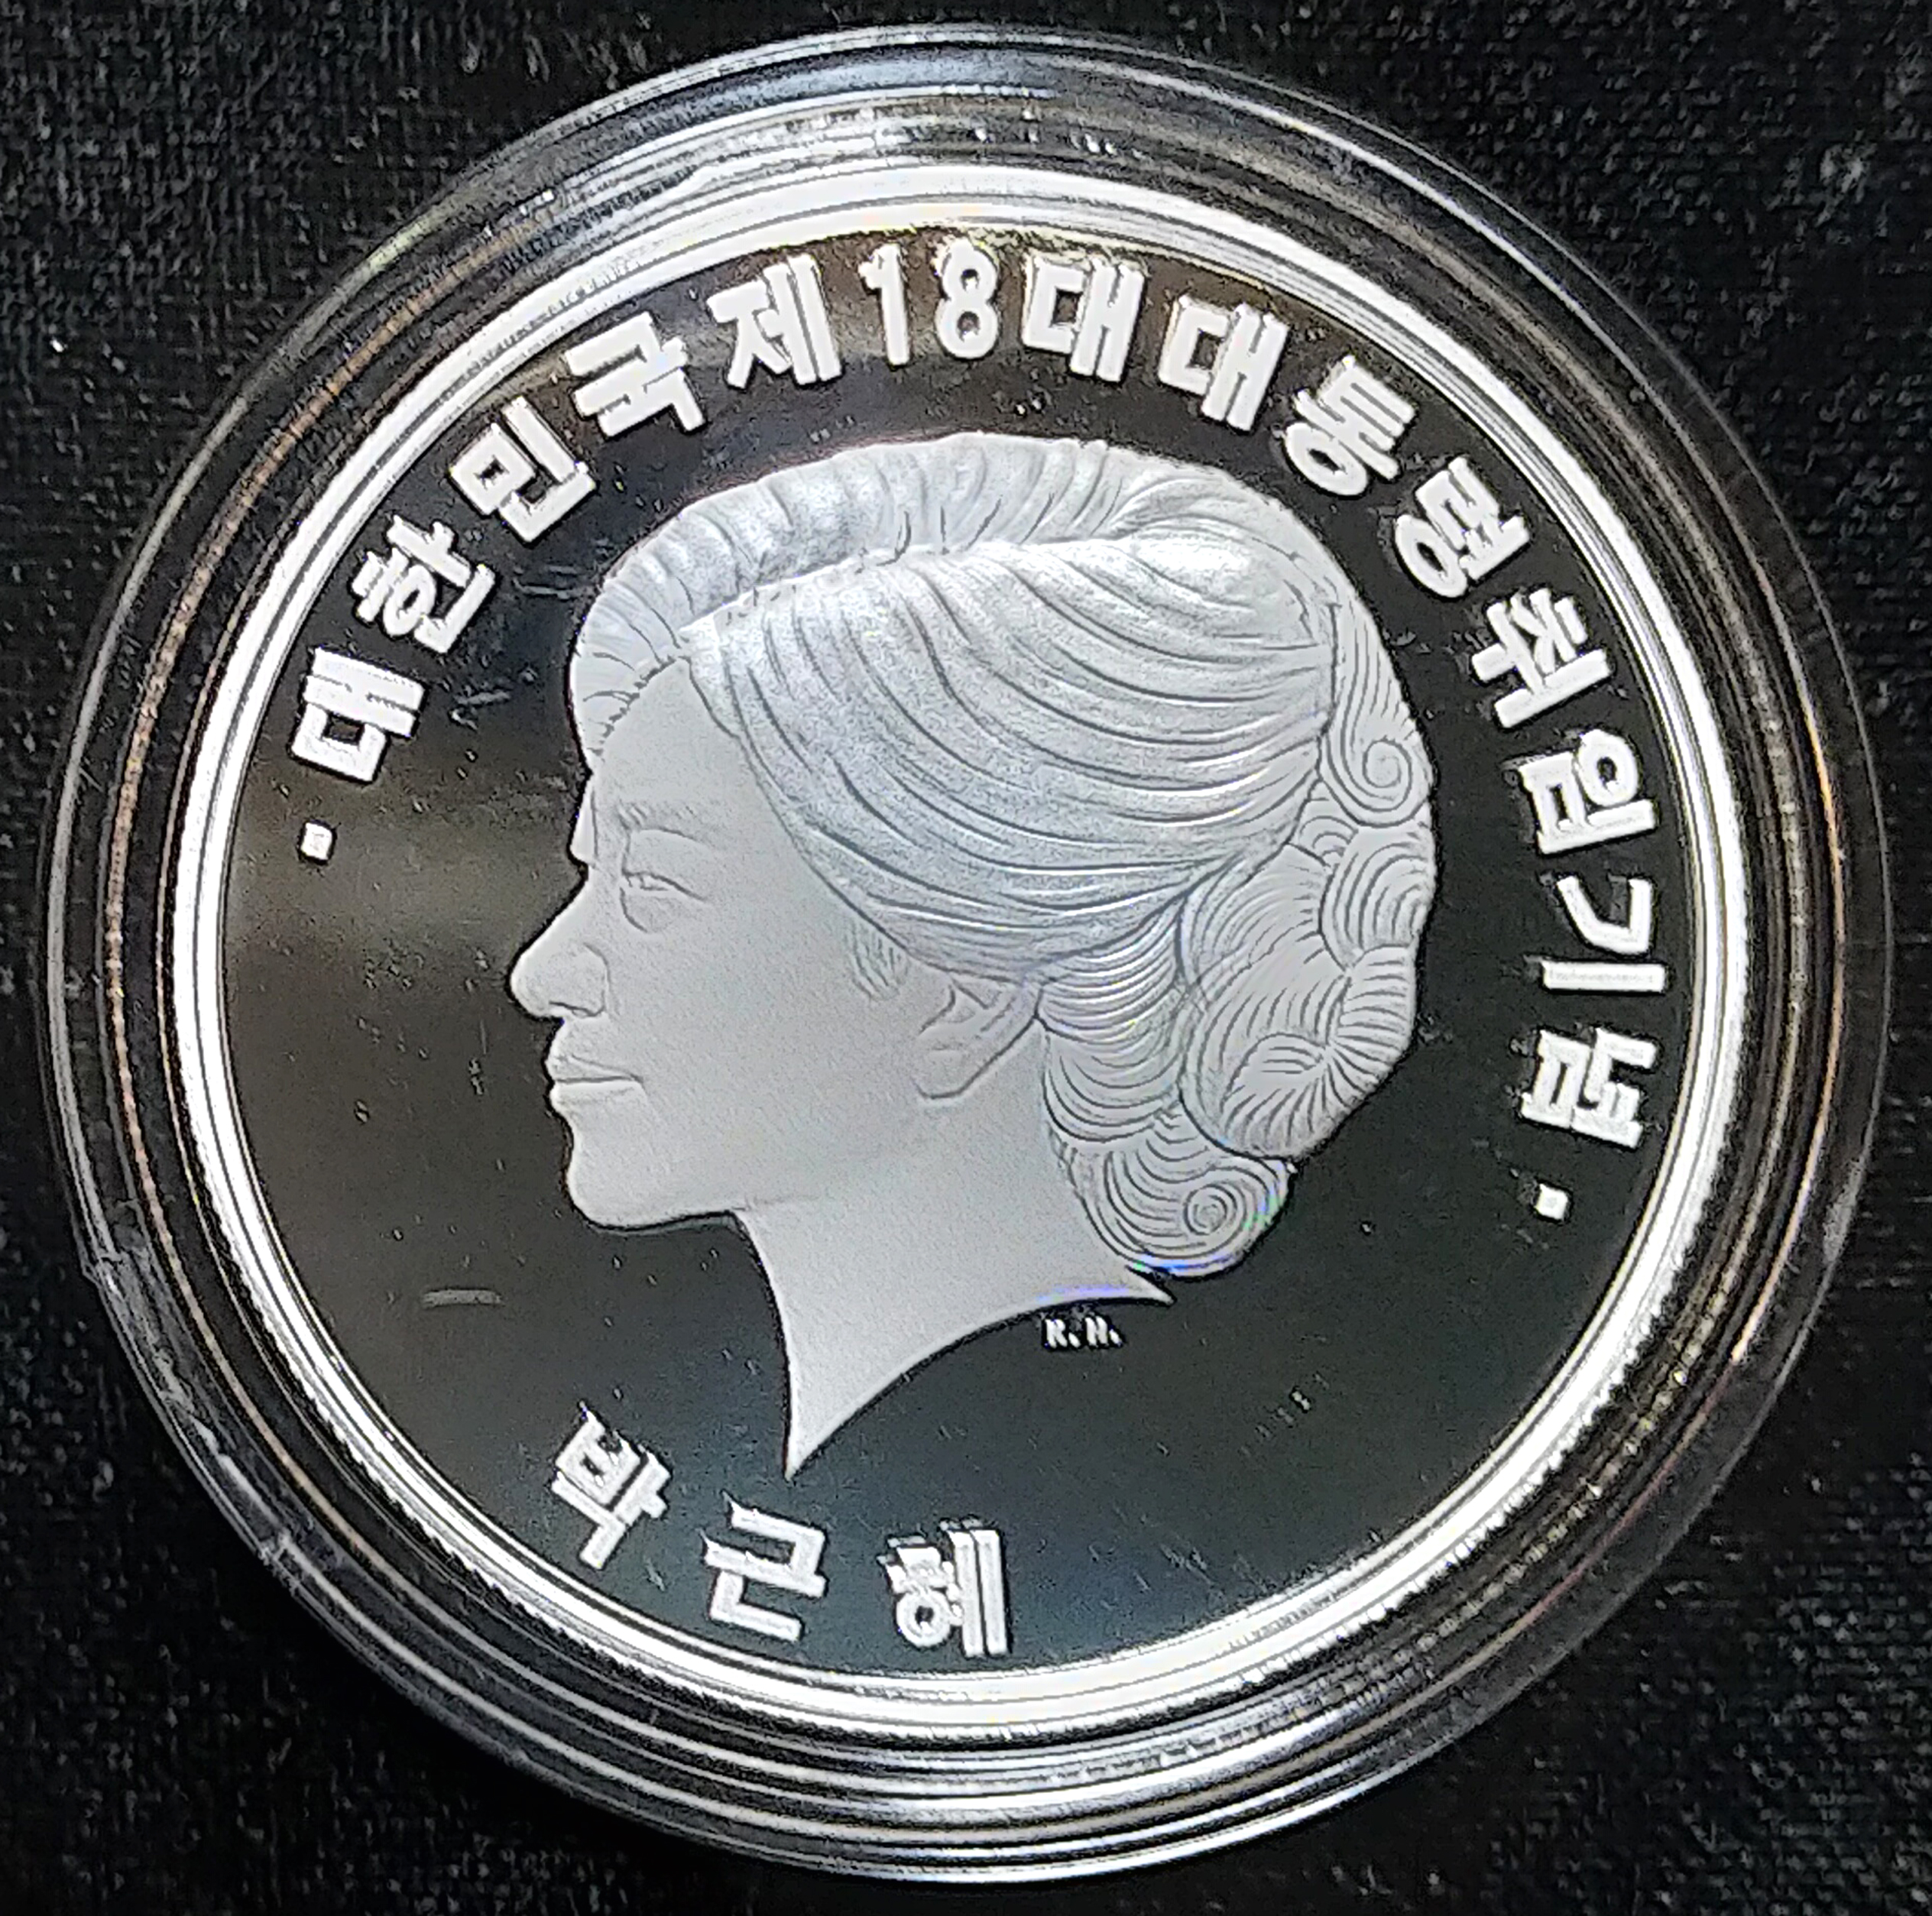 2013年 韓国第18代大統領就任記念純銀製徽章純銀 カプセル入造幣局発行 品位保証鑑定証付